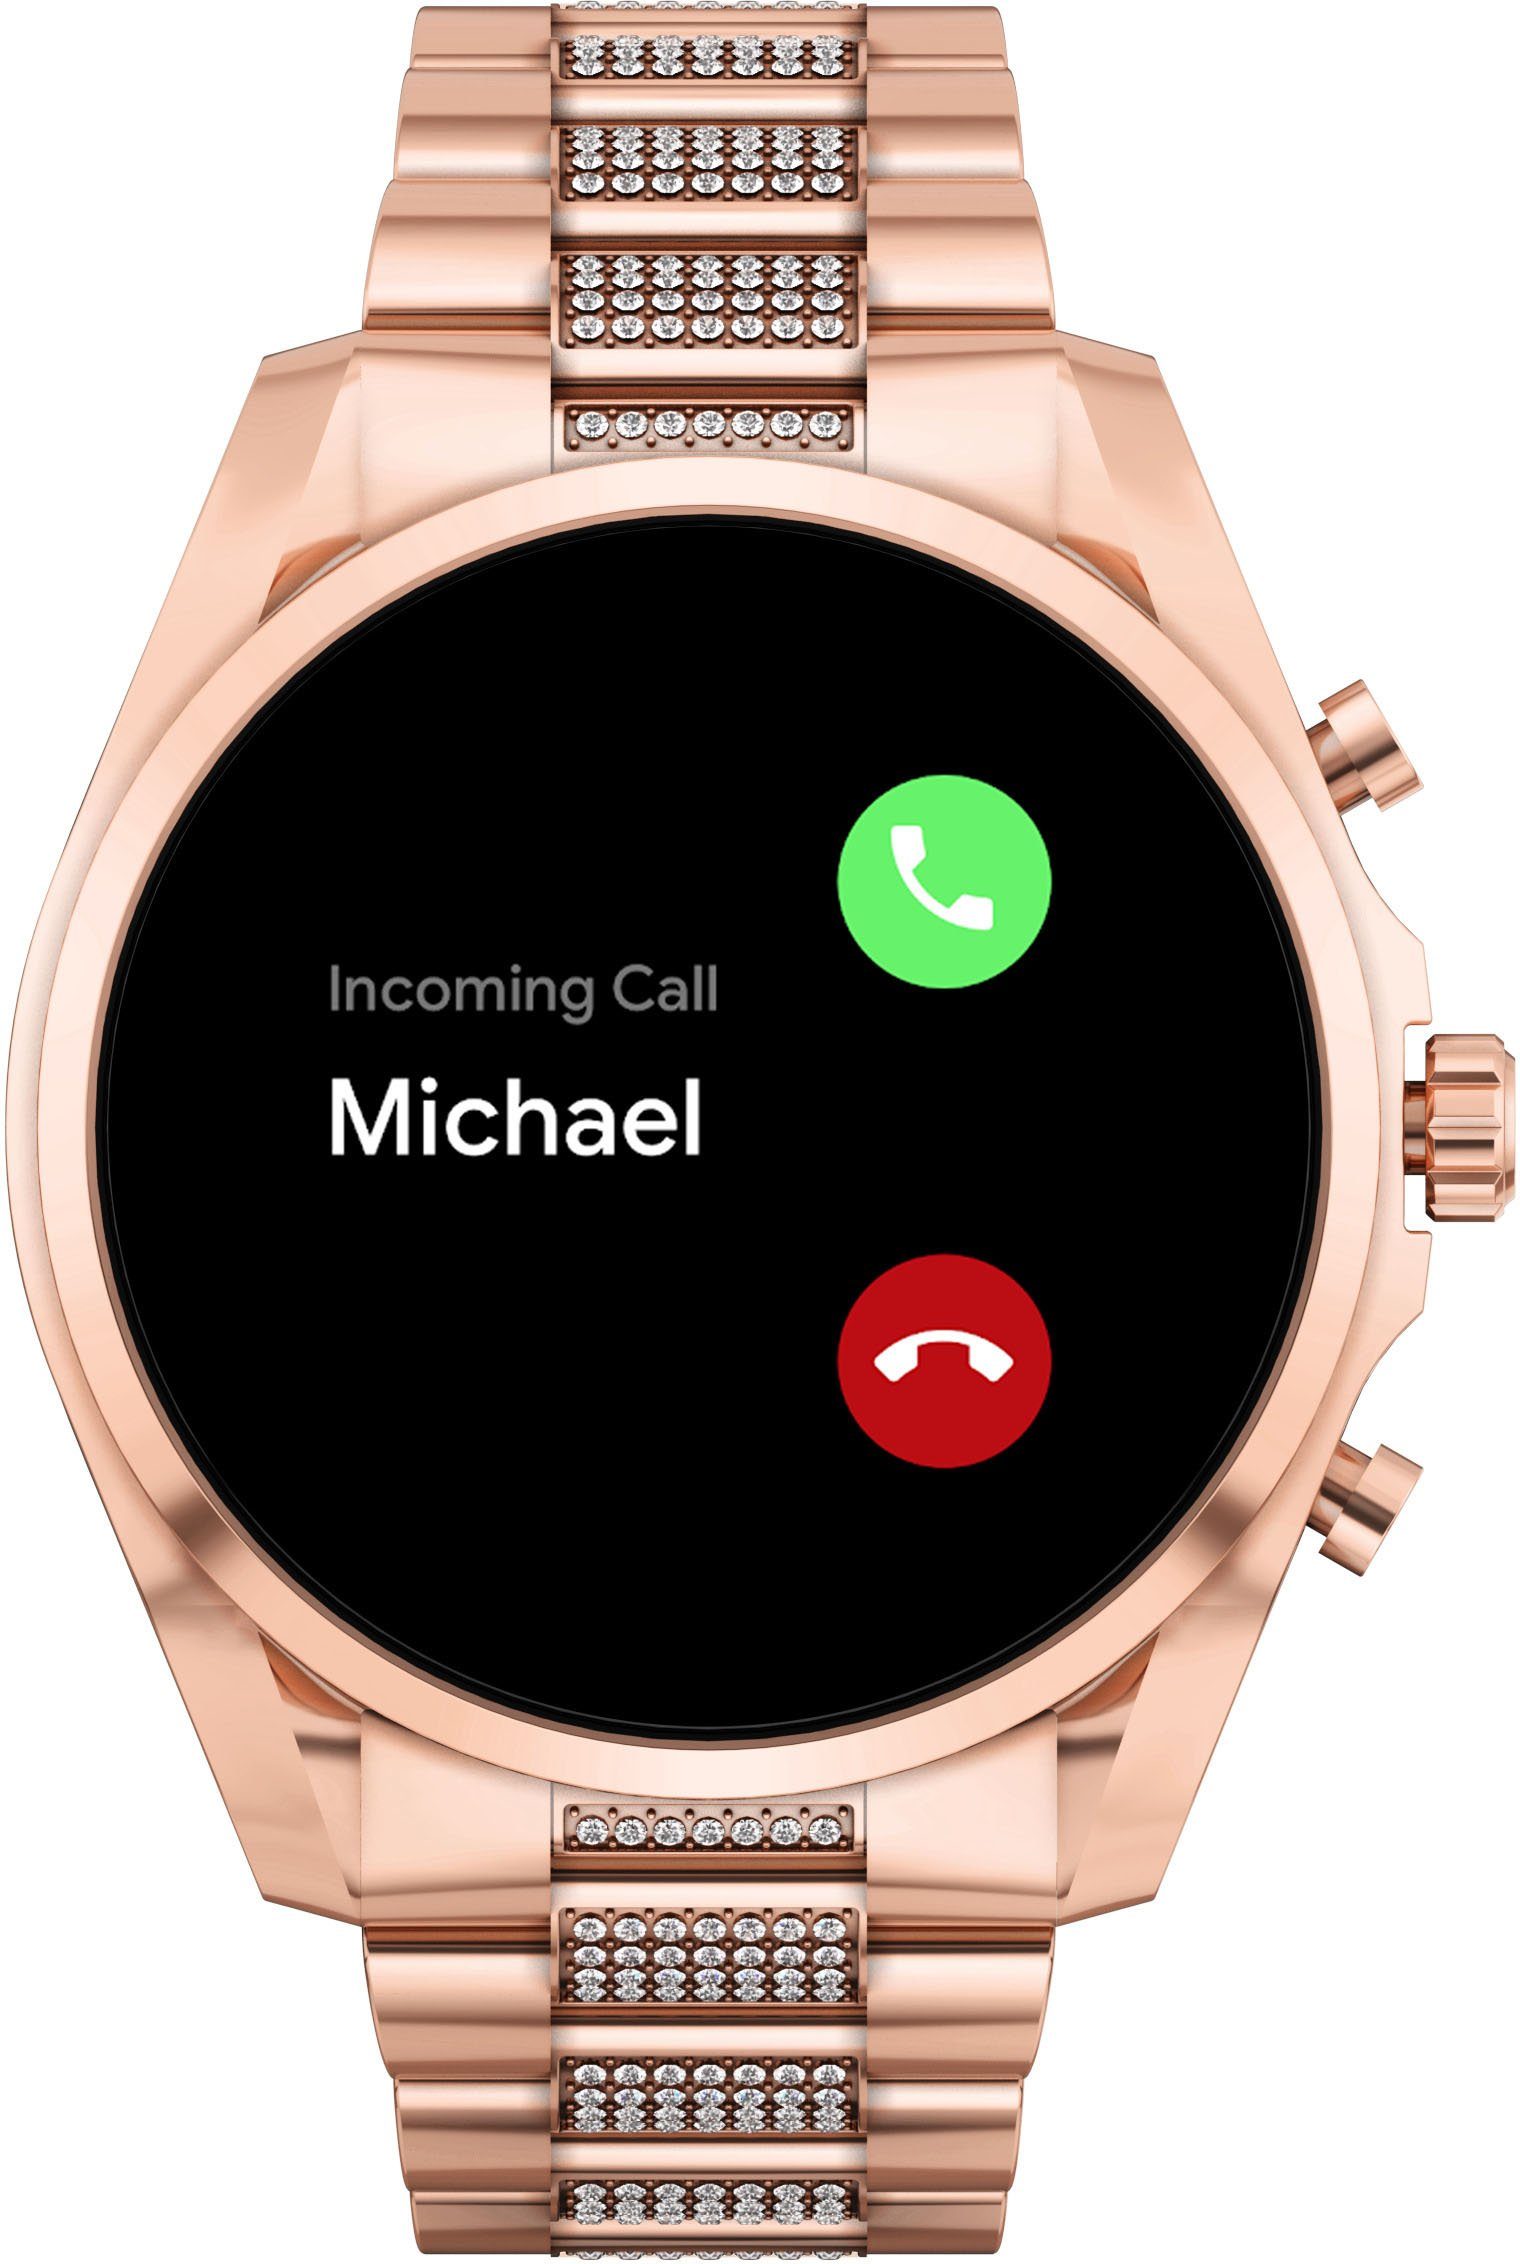 MICHAEL KORS ACCESS BRADSHAW (GEN 6), MKT5135 Smartwatch (Wear OS by  Google), Kompatibel ab Android 6+ (ausgenommen Go Edition) und iOS 12+